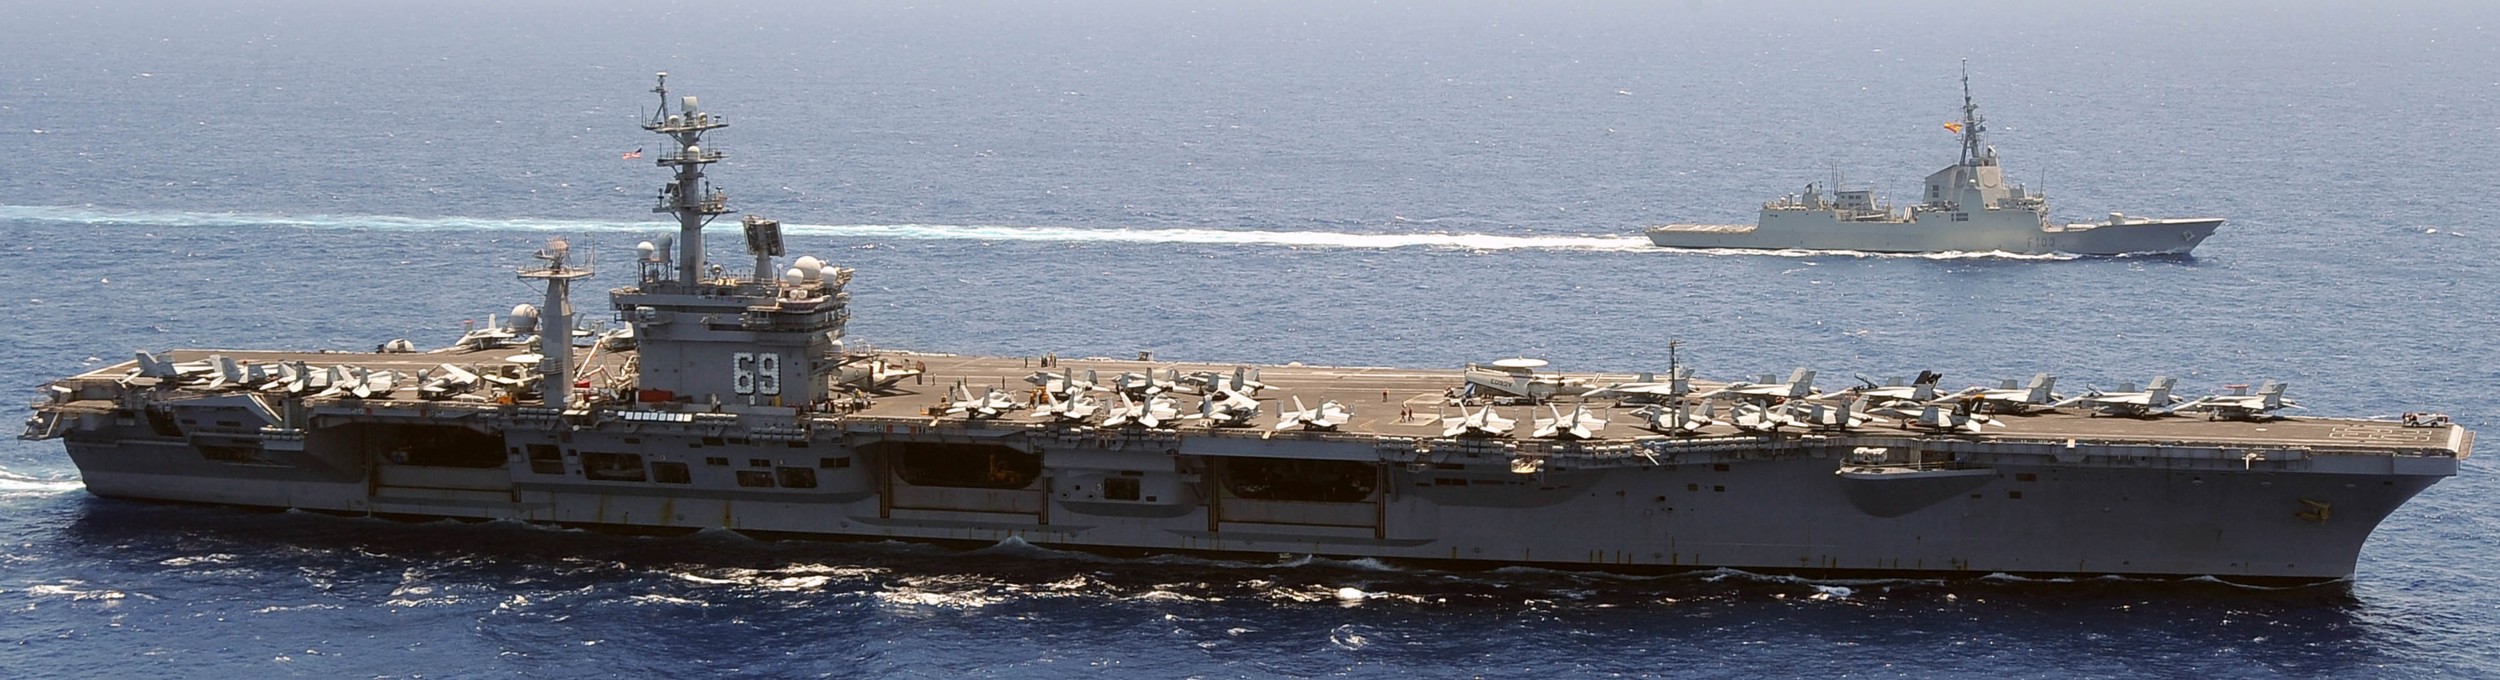 uss dwight d. eisenhower cvn-69 aircraft carrier cvw-7 2012 133